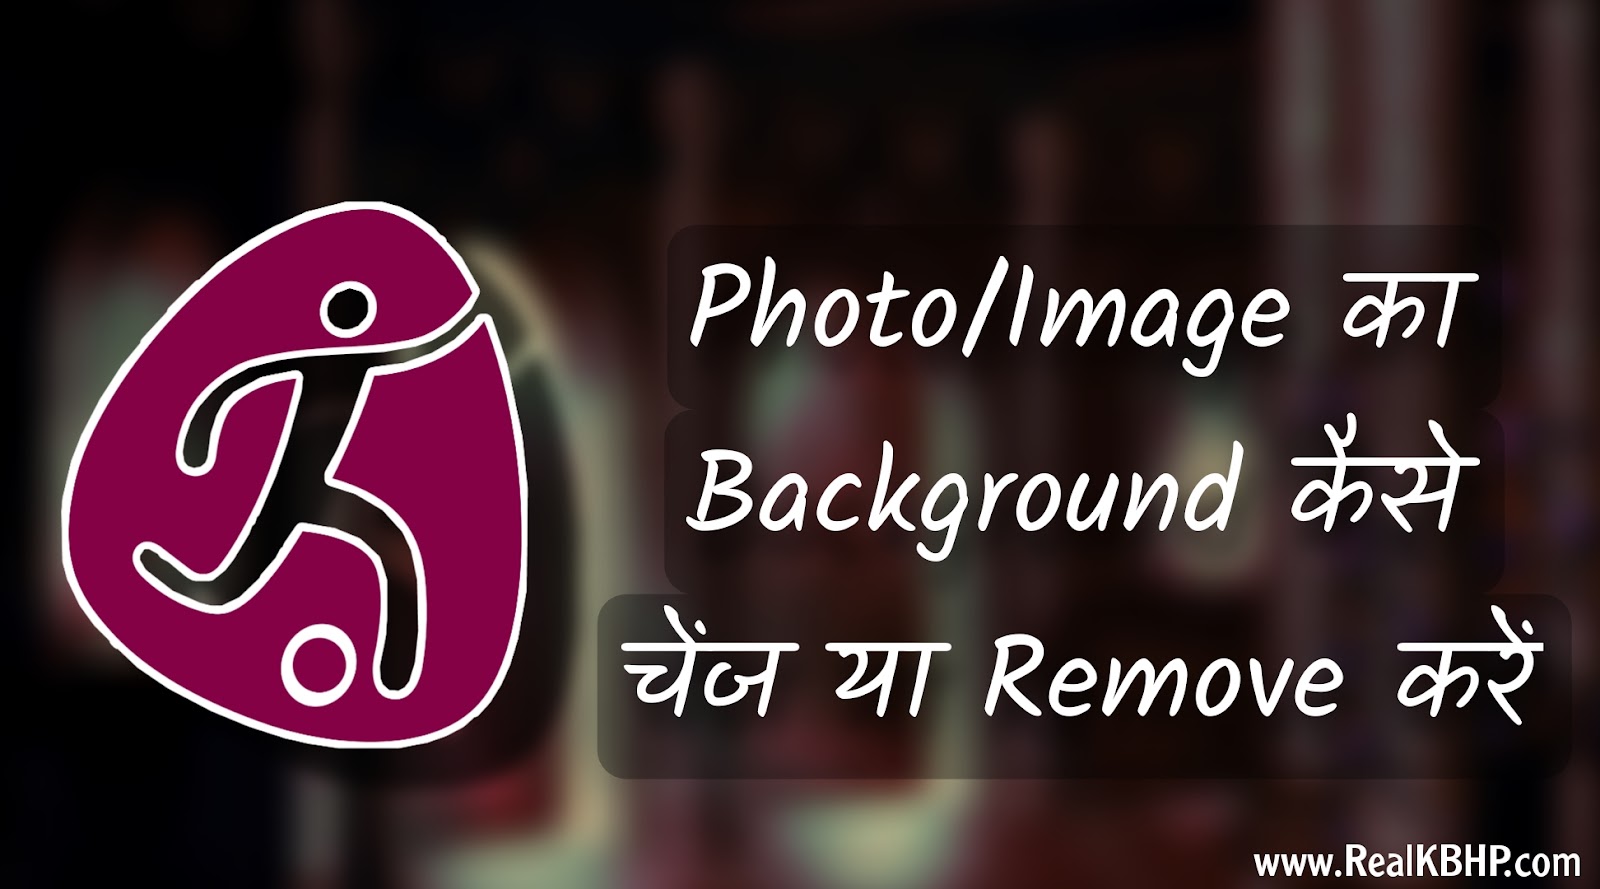 Photo/Image का Background कैसे Change या Remove करें